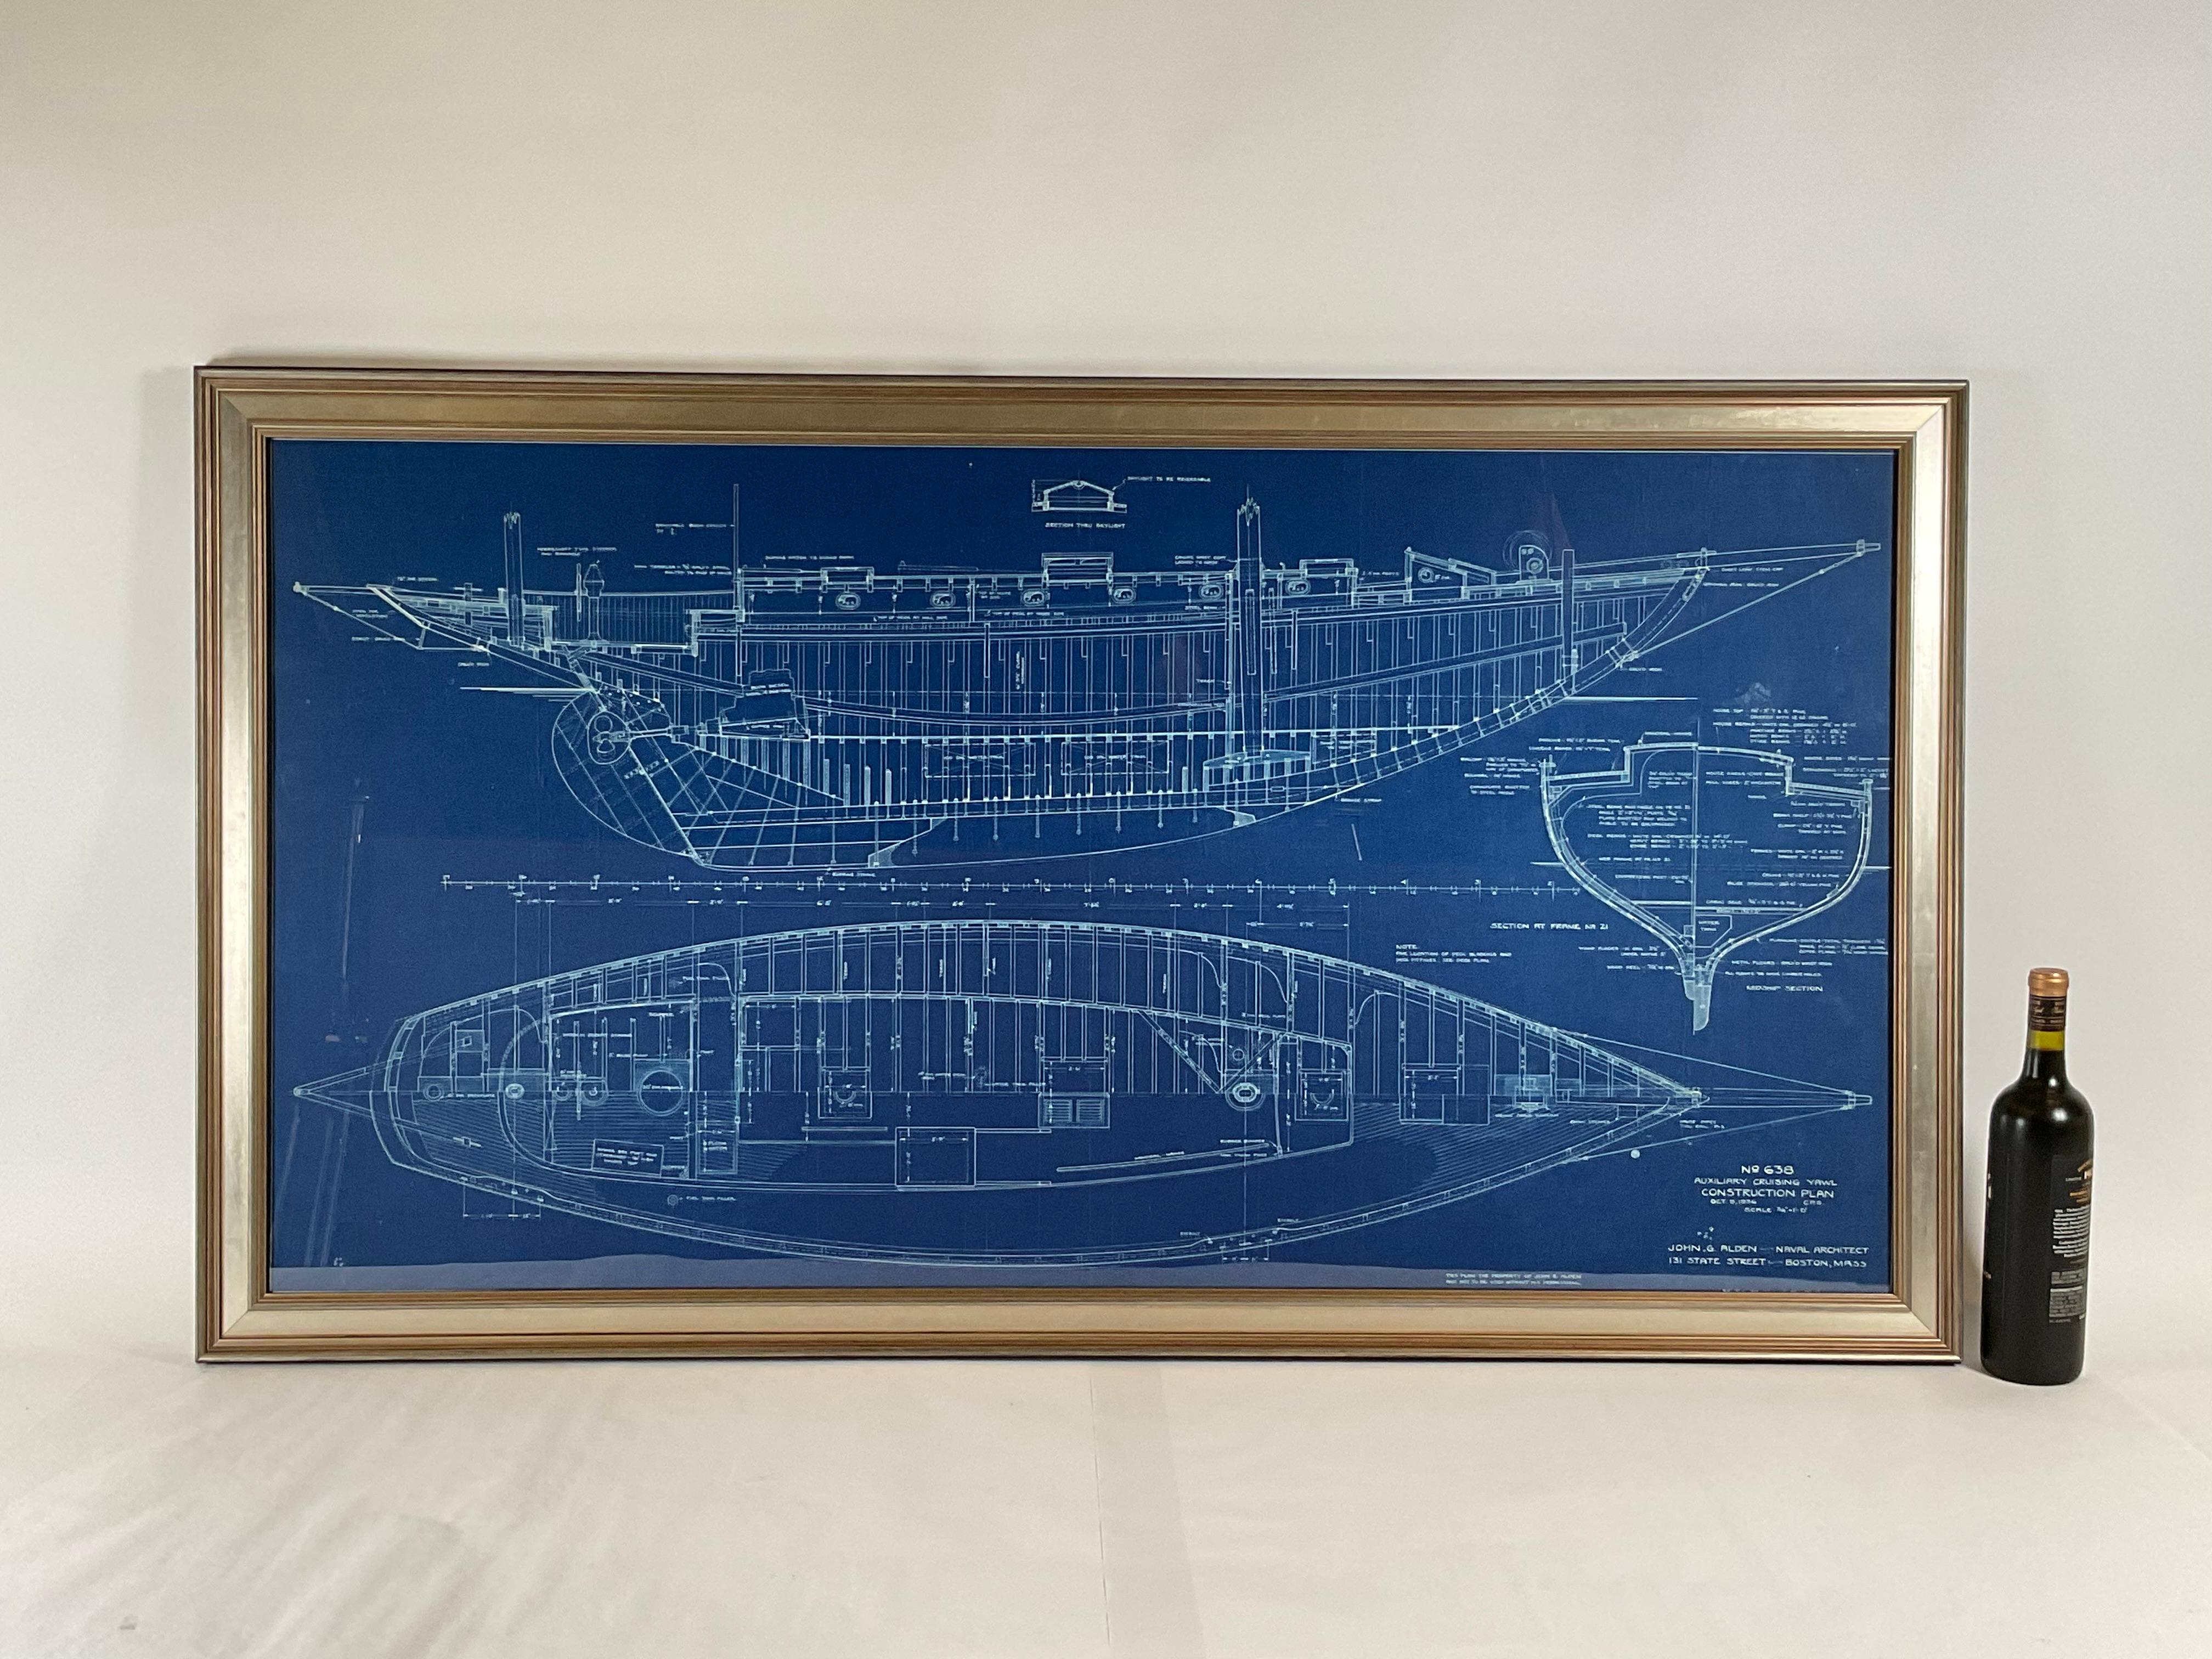 Original-Yachtentwurf der Fahrtenjolle Evening Star. Dies stammt aus dem Büro von John G. ALDEN, Yacht Architects, Boston. Die Legende rechts unten auf der Zeichnung lautet Nr. 638, Hilfskreuzjolle, Kabinenplan. Datiert auf den 17. Oktober 1936. Die